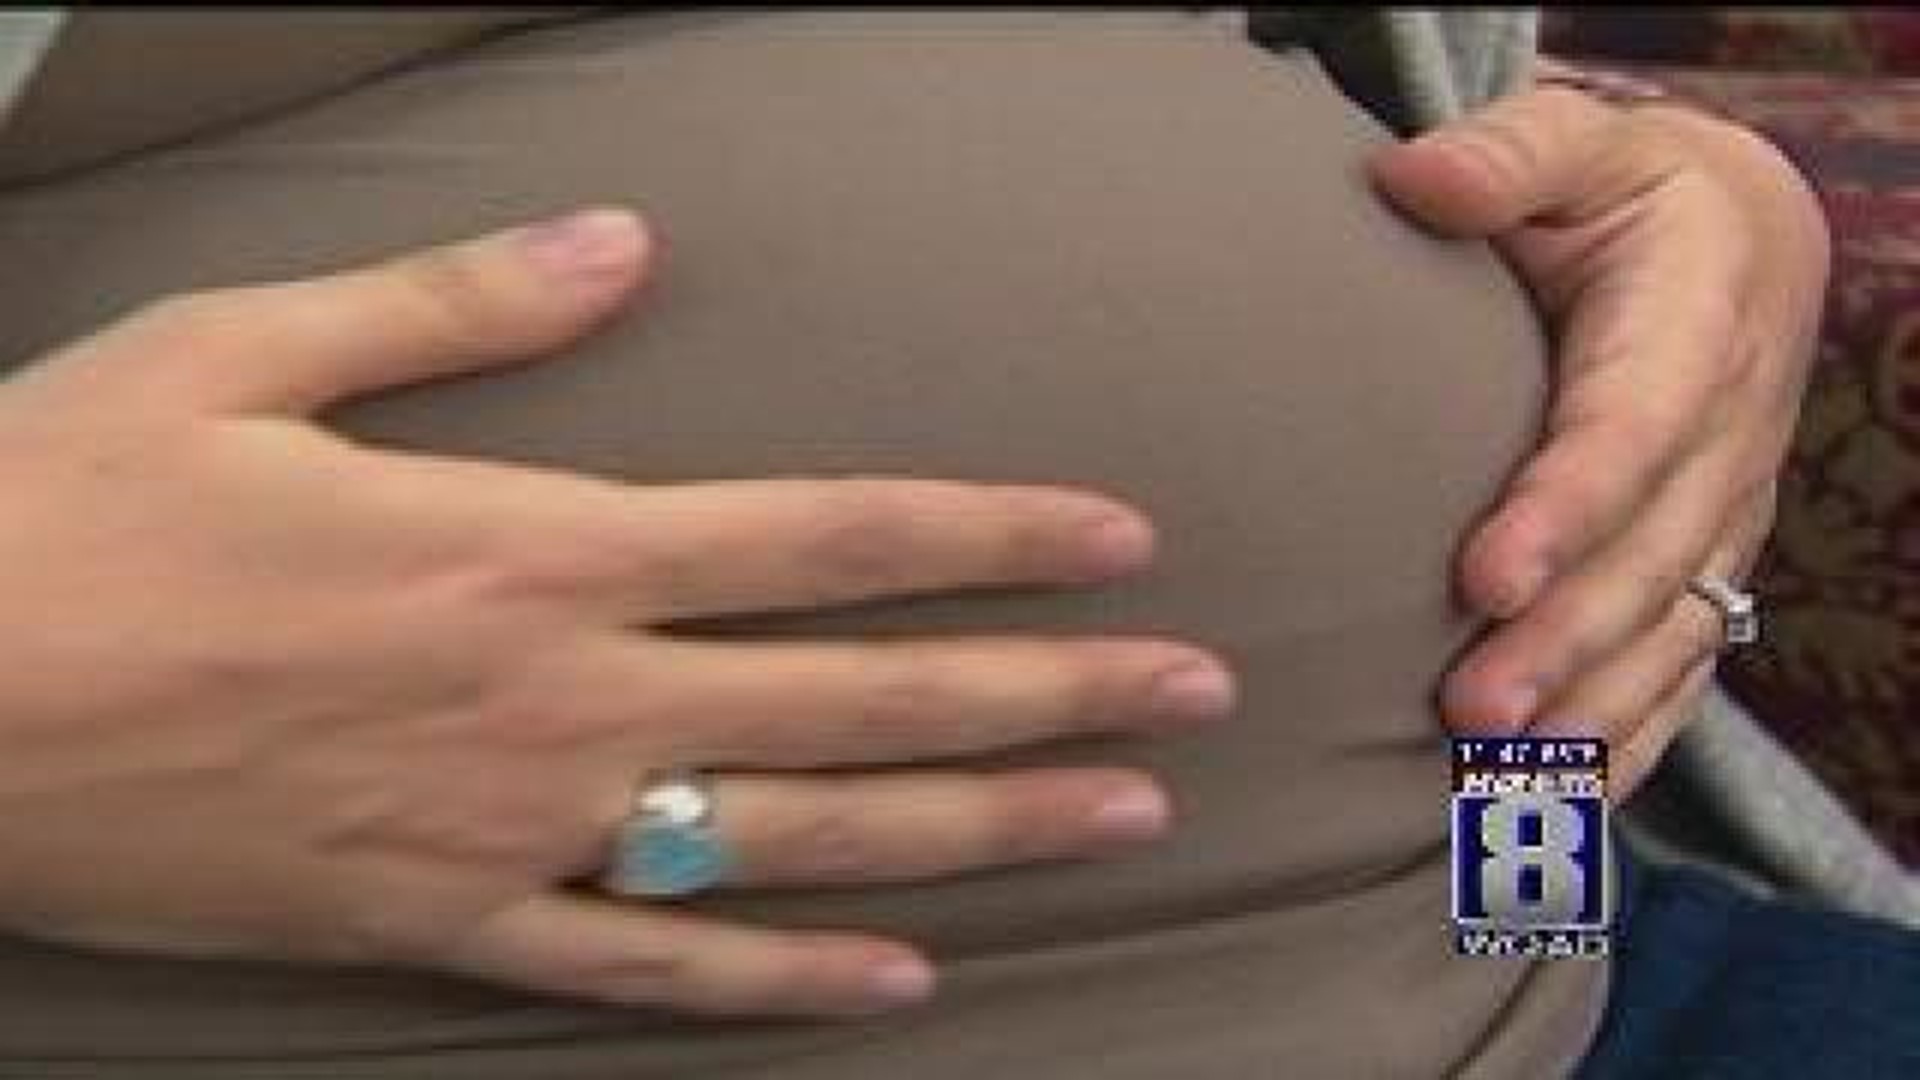 OK law requiring pre-abortion ultrasound struck down